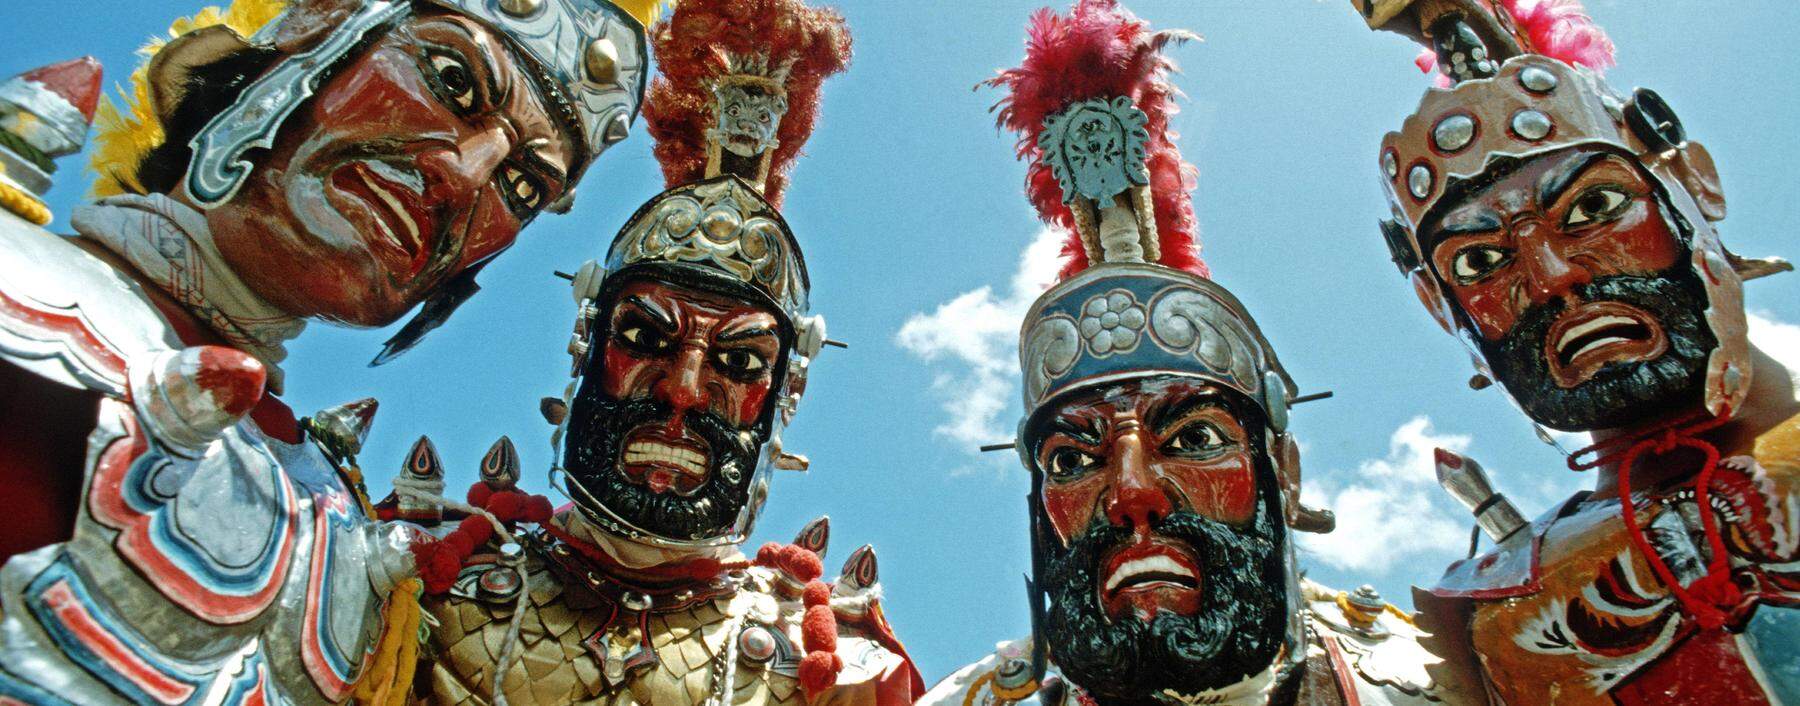 Keine Angst vor alten Römern: Bei den Moriones-Feiern auf den Philippinen schlüpfen die Teilnehmer in der Osterwoche in historische Kostüme.